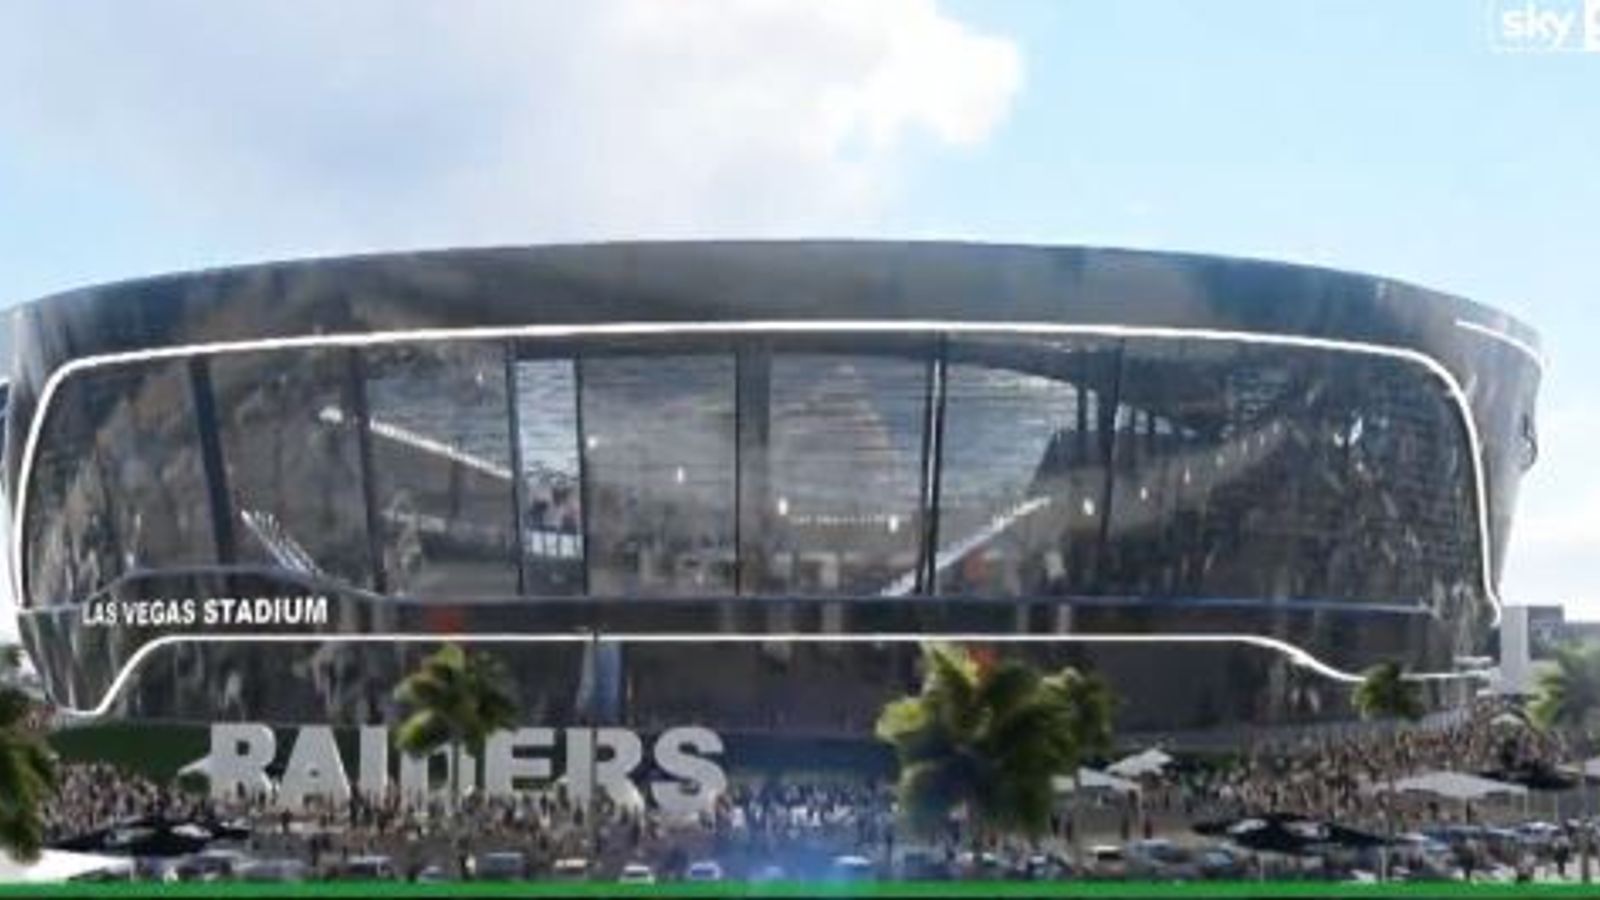 Oakland Raiders unveil new Las Vegas stadium plans | NFL News | Sky Sports1600 x 900